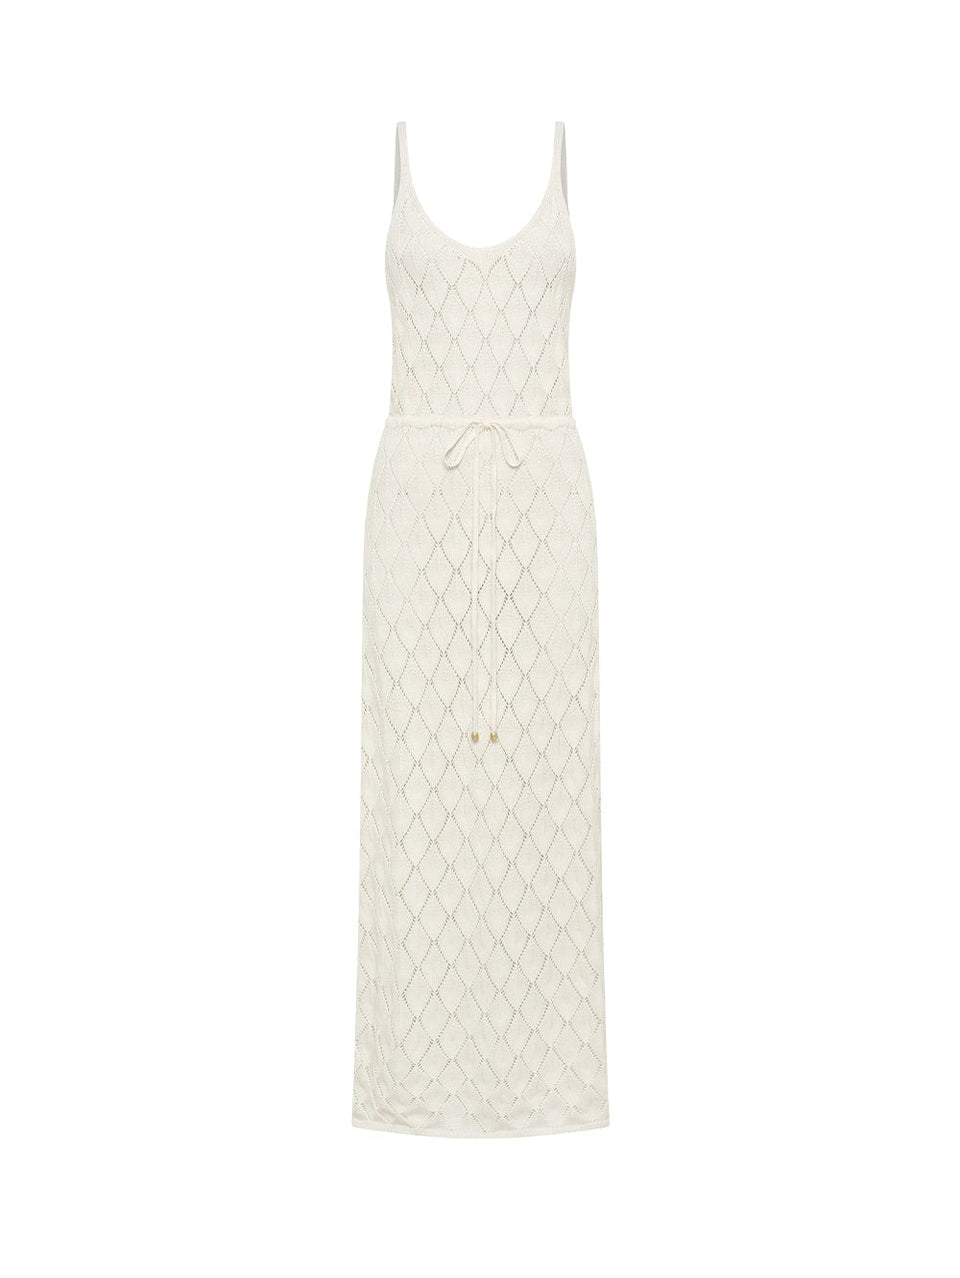 Claudia Strappy Knit Dress KIVARI | Cream knit midi dress